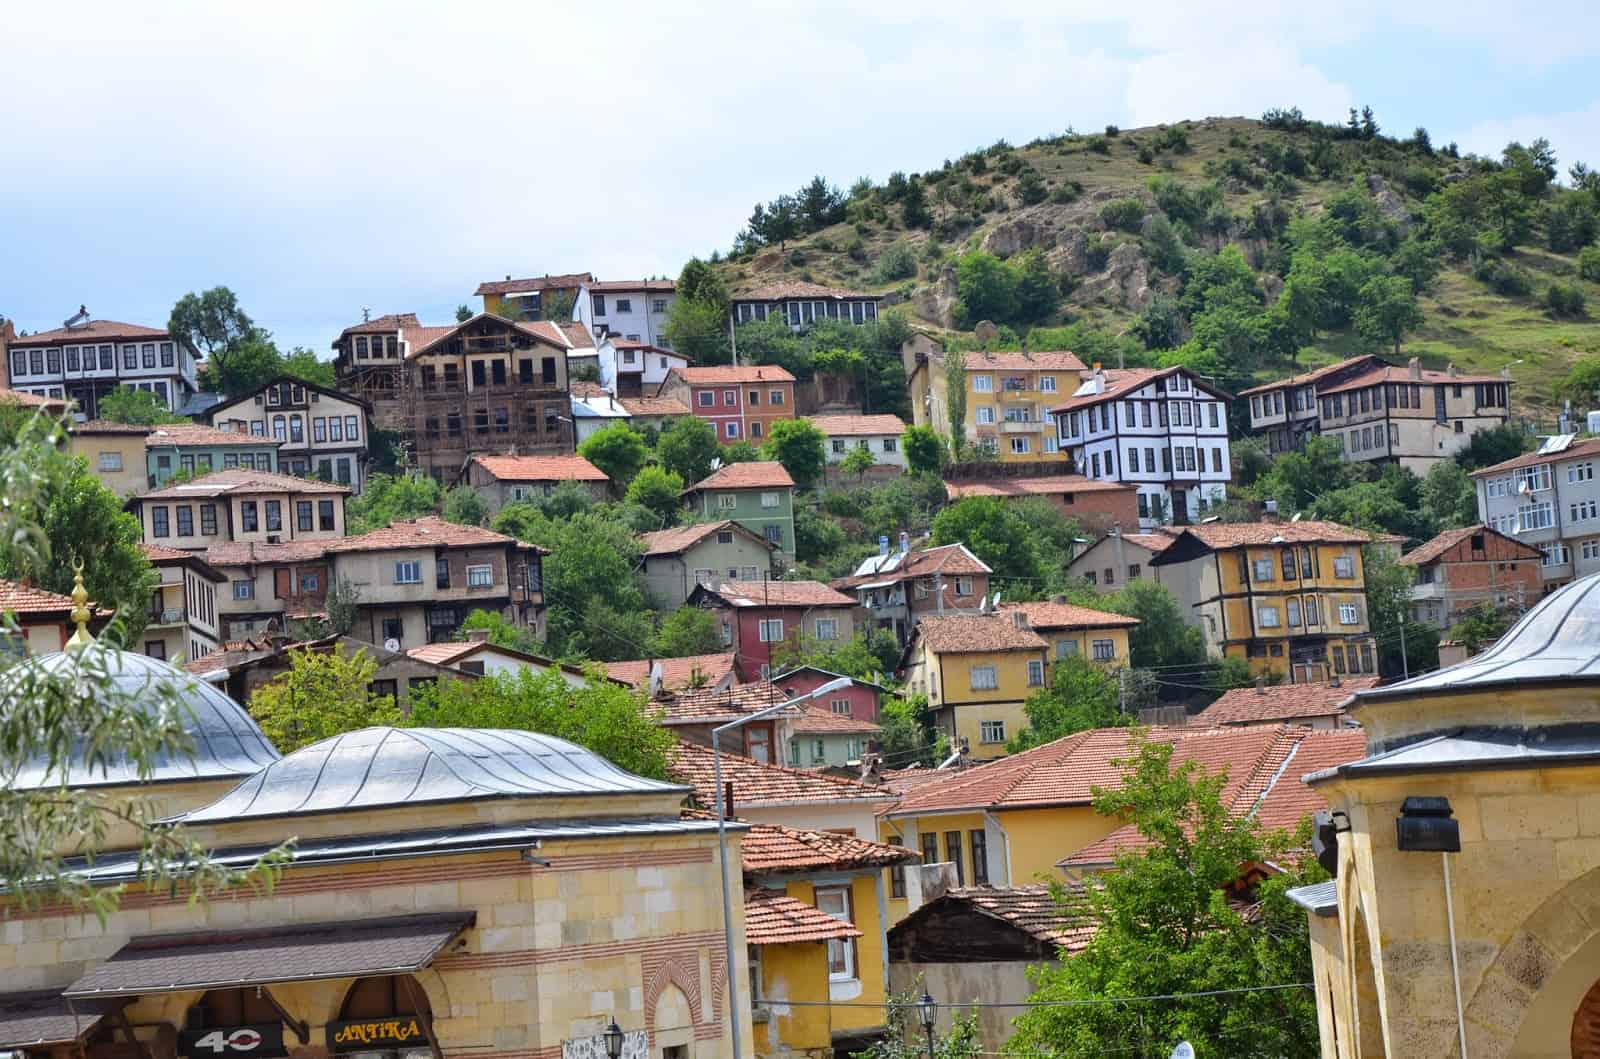 Kastamonu, Turkey